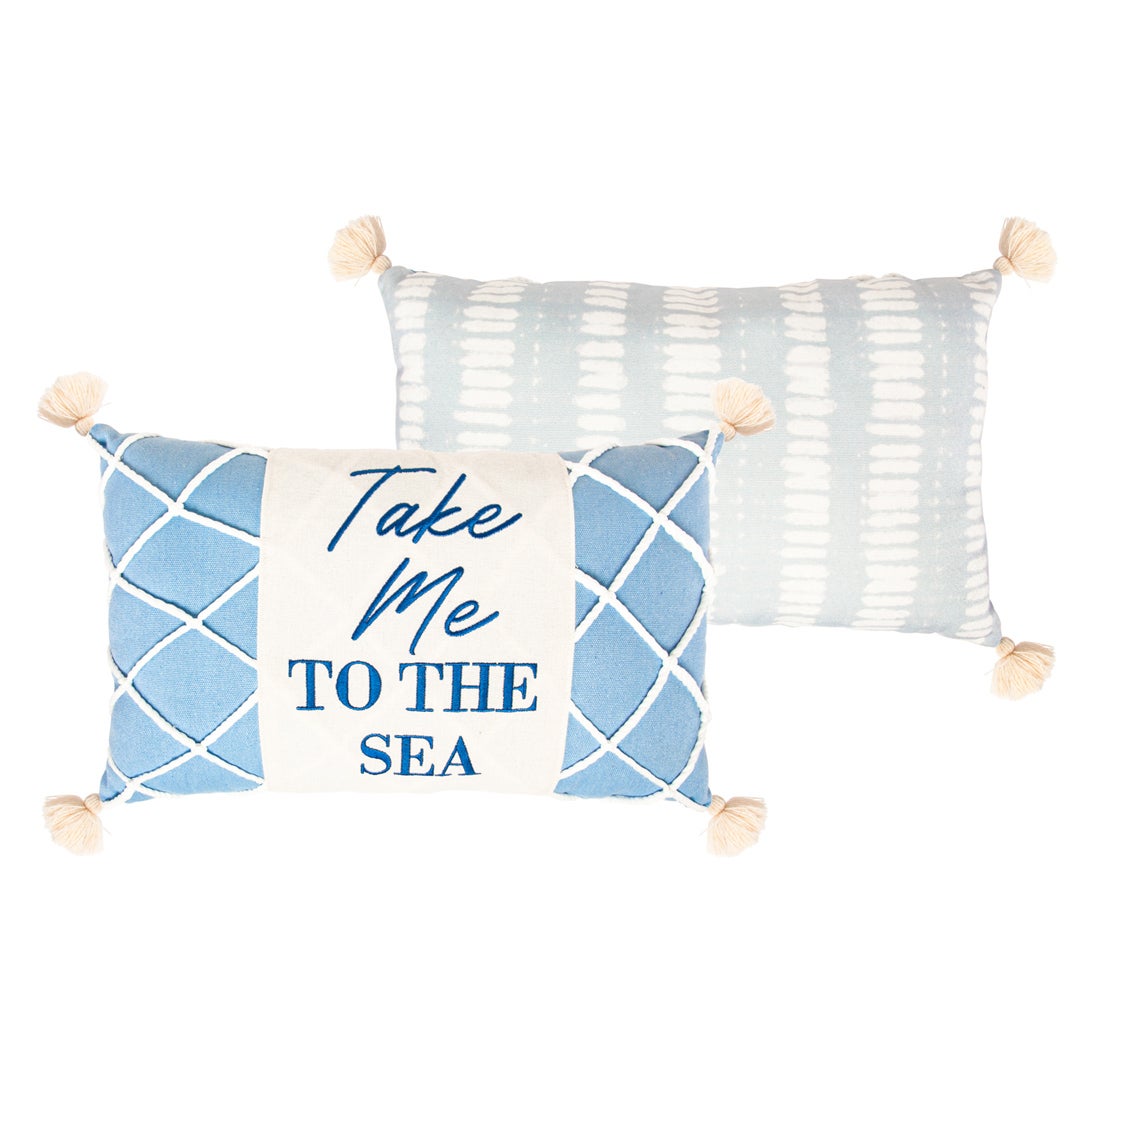 16" x 10" Lumbar Coastal Pillow, "Take Me to the Sea"